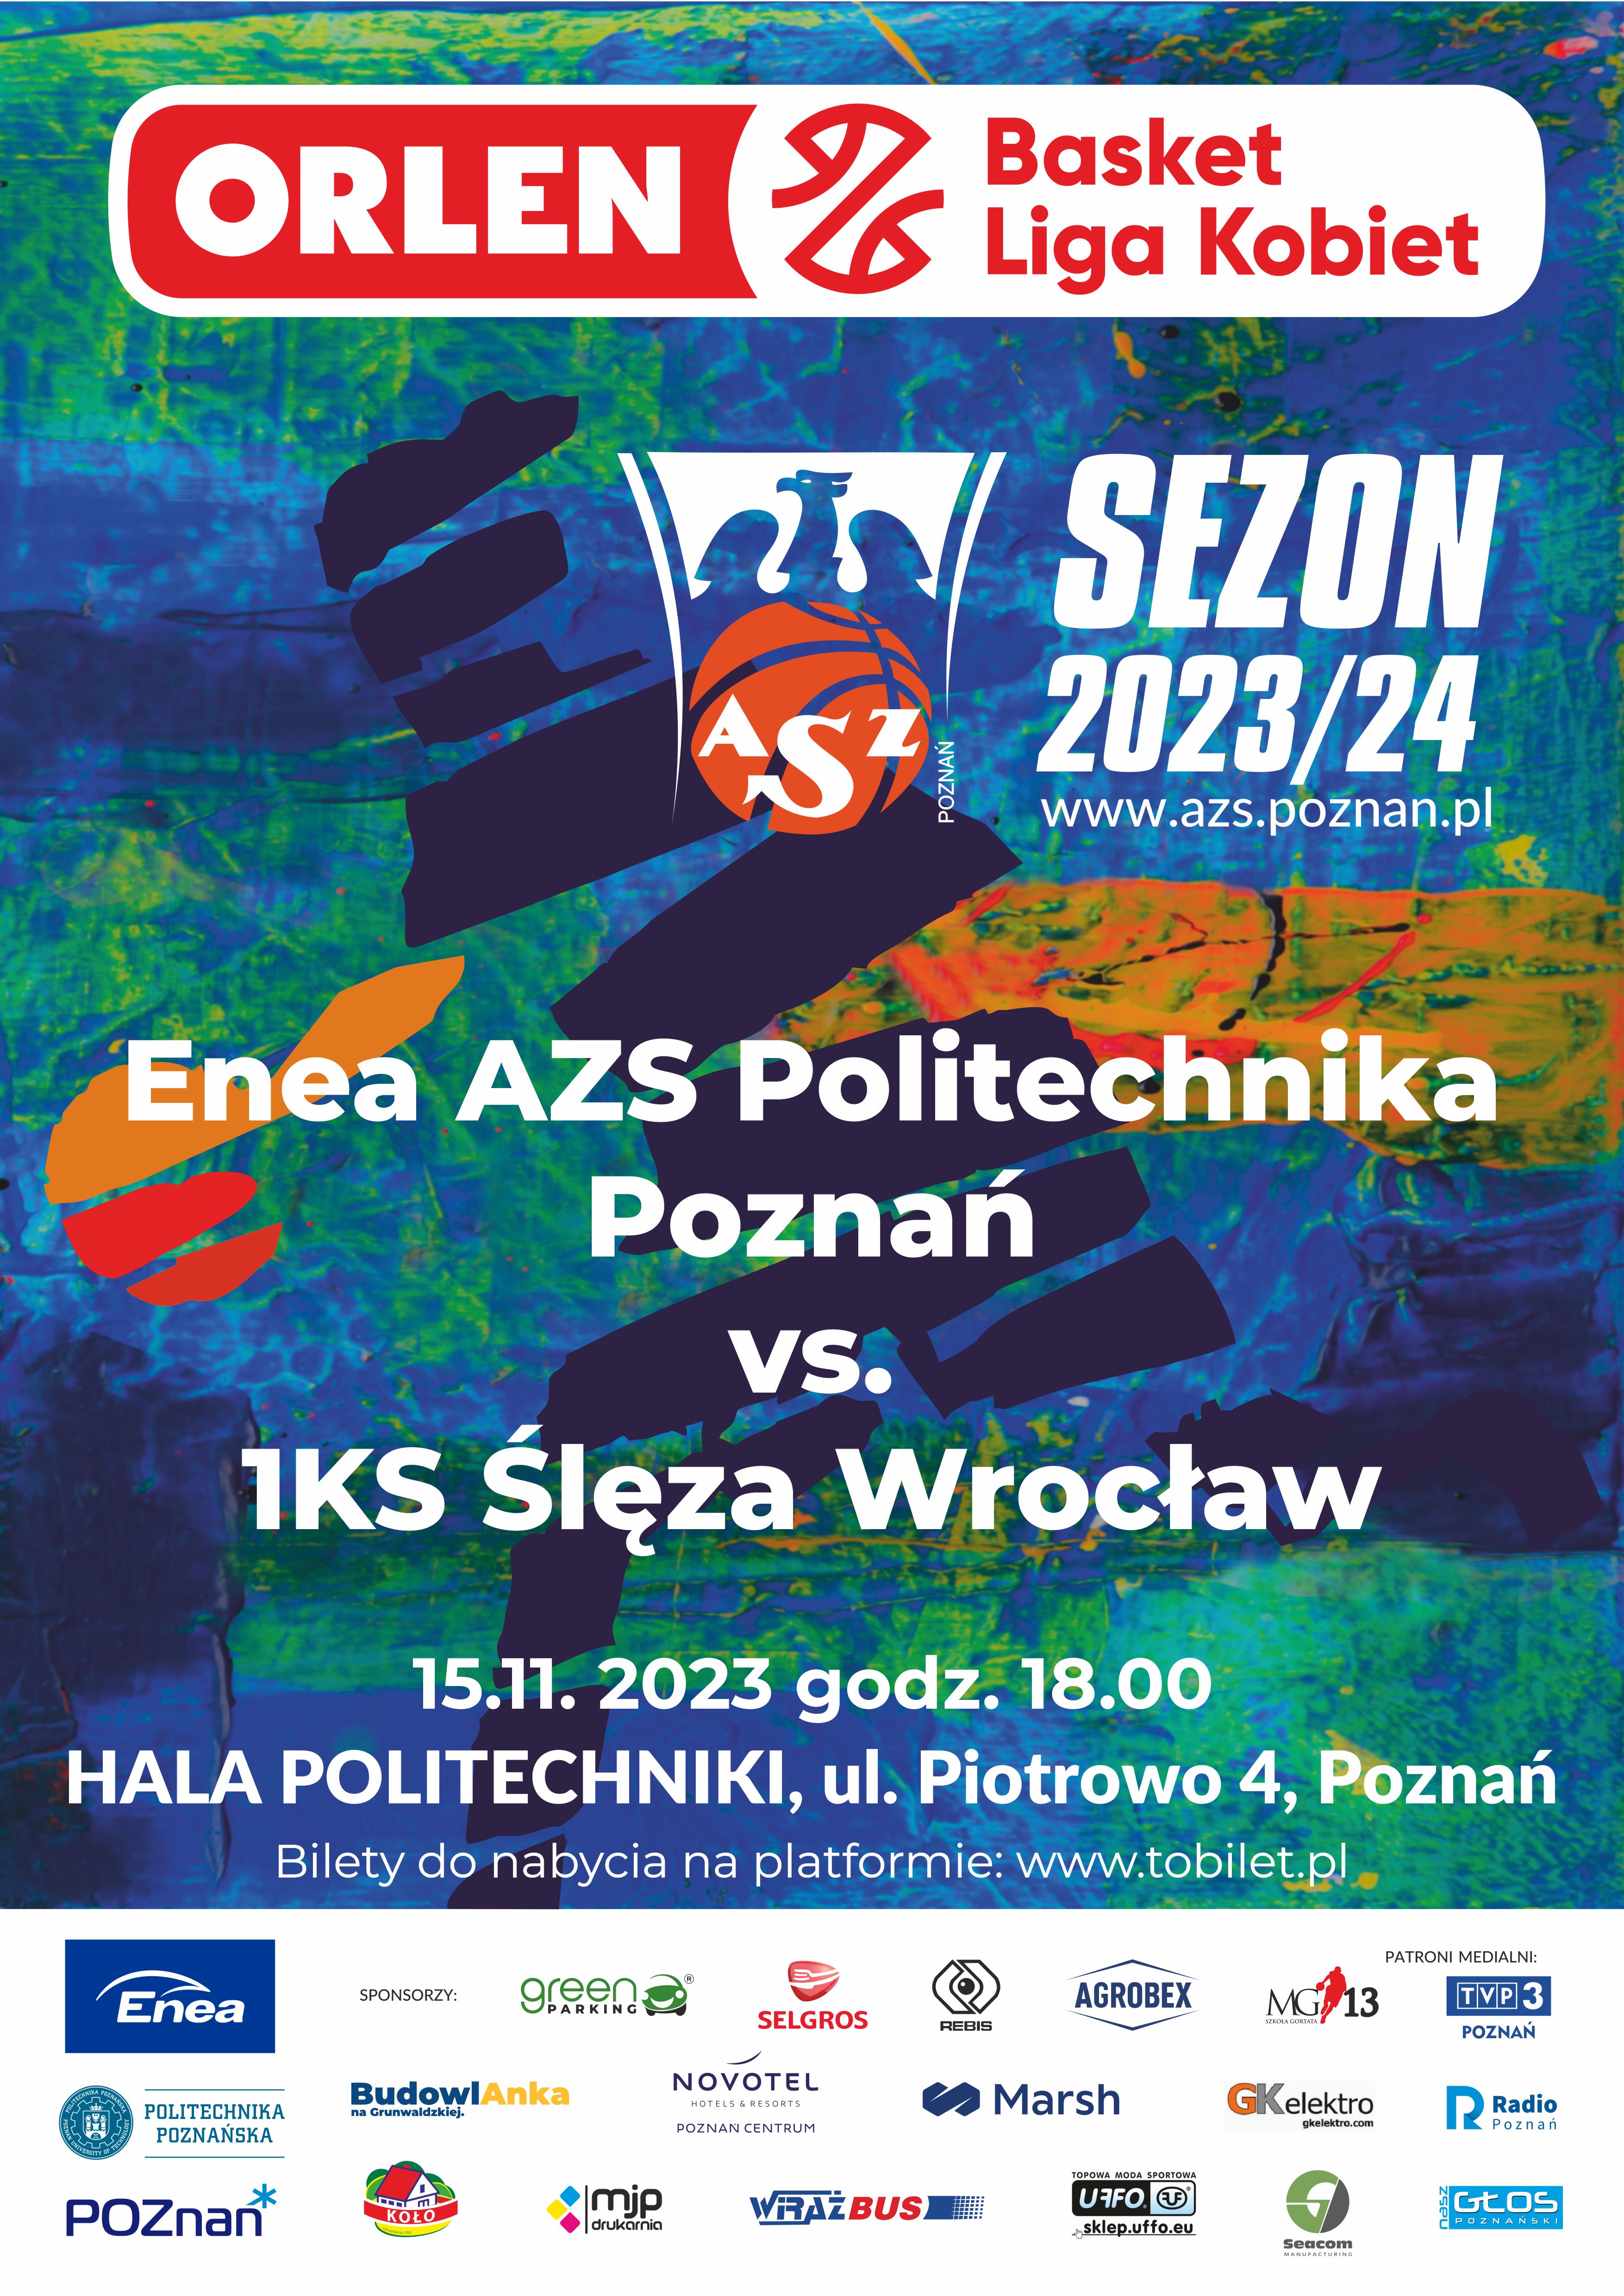 mecz Enea AZS Politechnika Poznań vs. 1KS Ślęza Wrocław, 15.11.2023 r. godz. 18.00